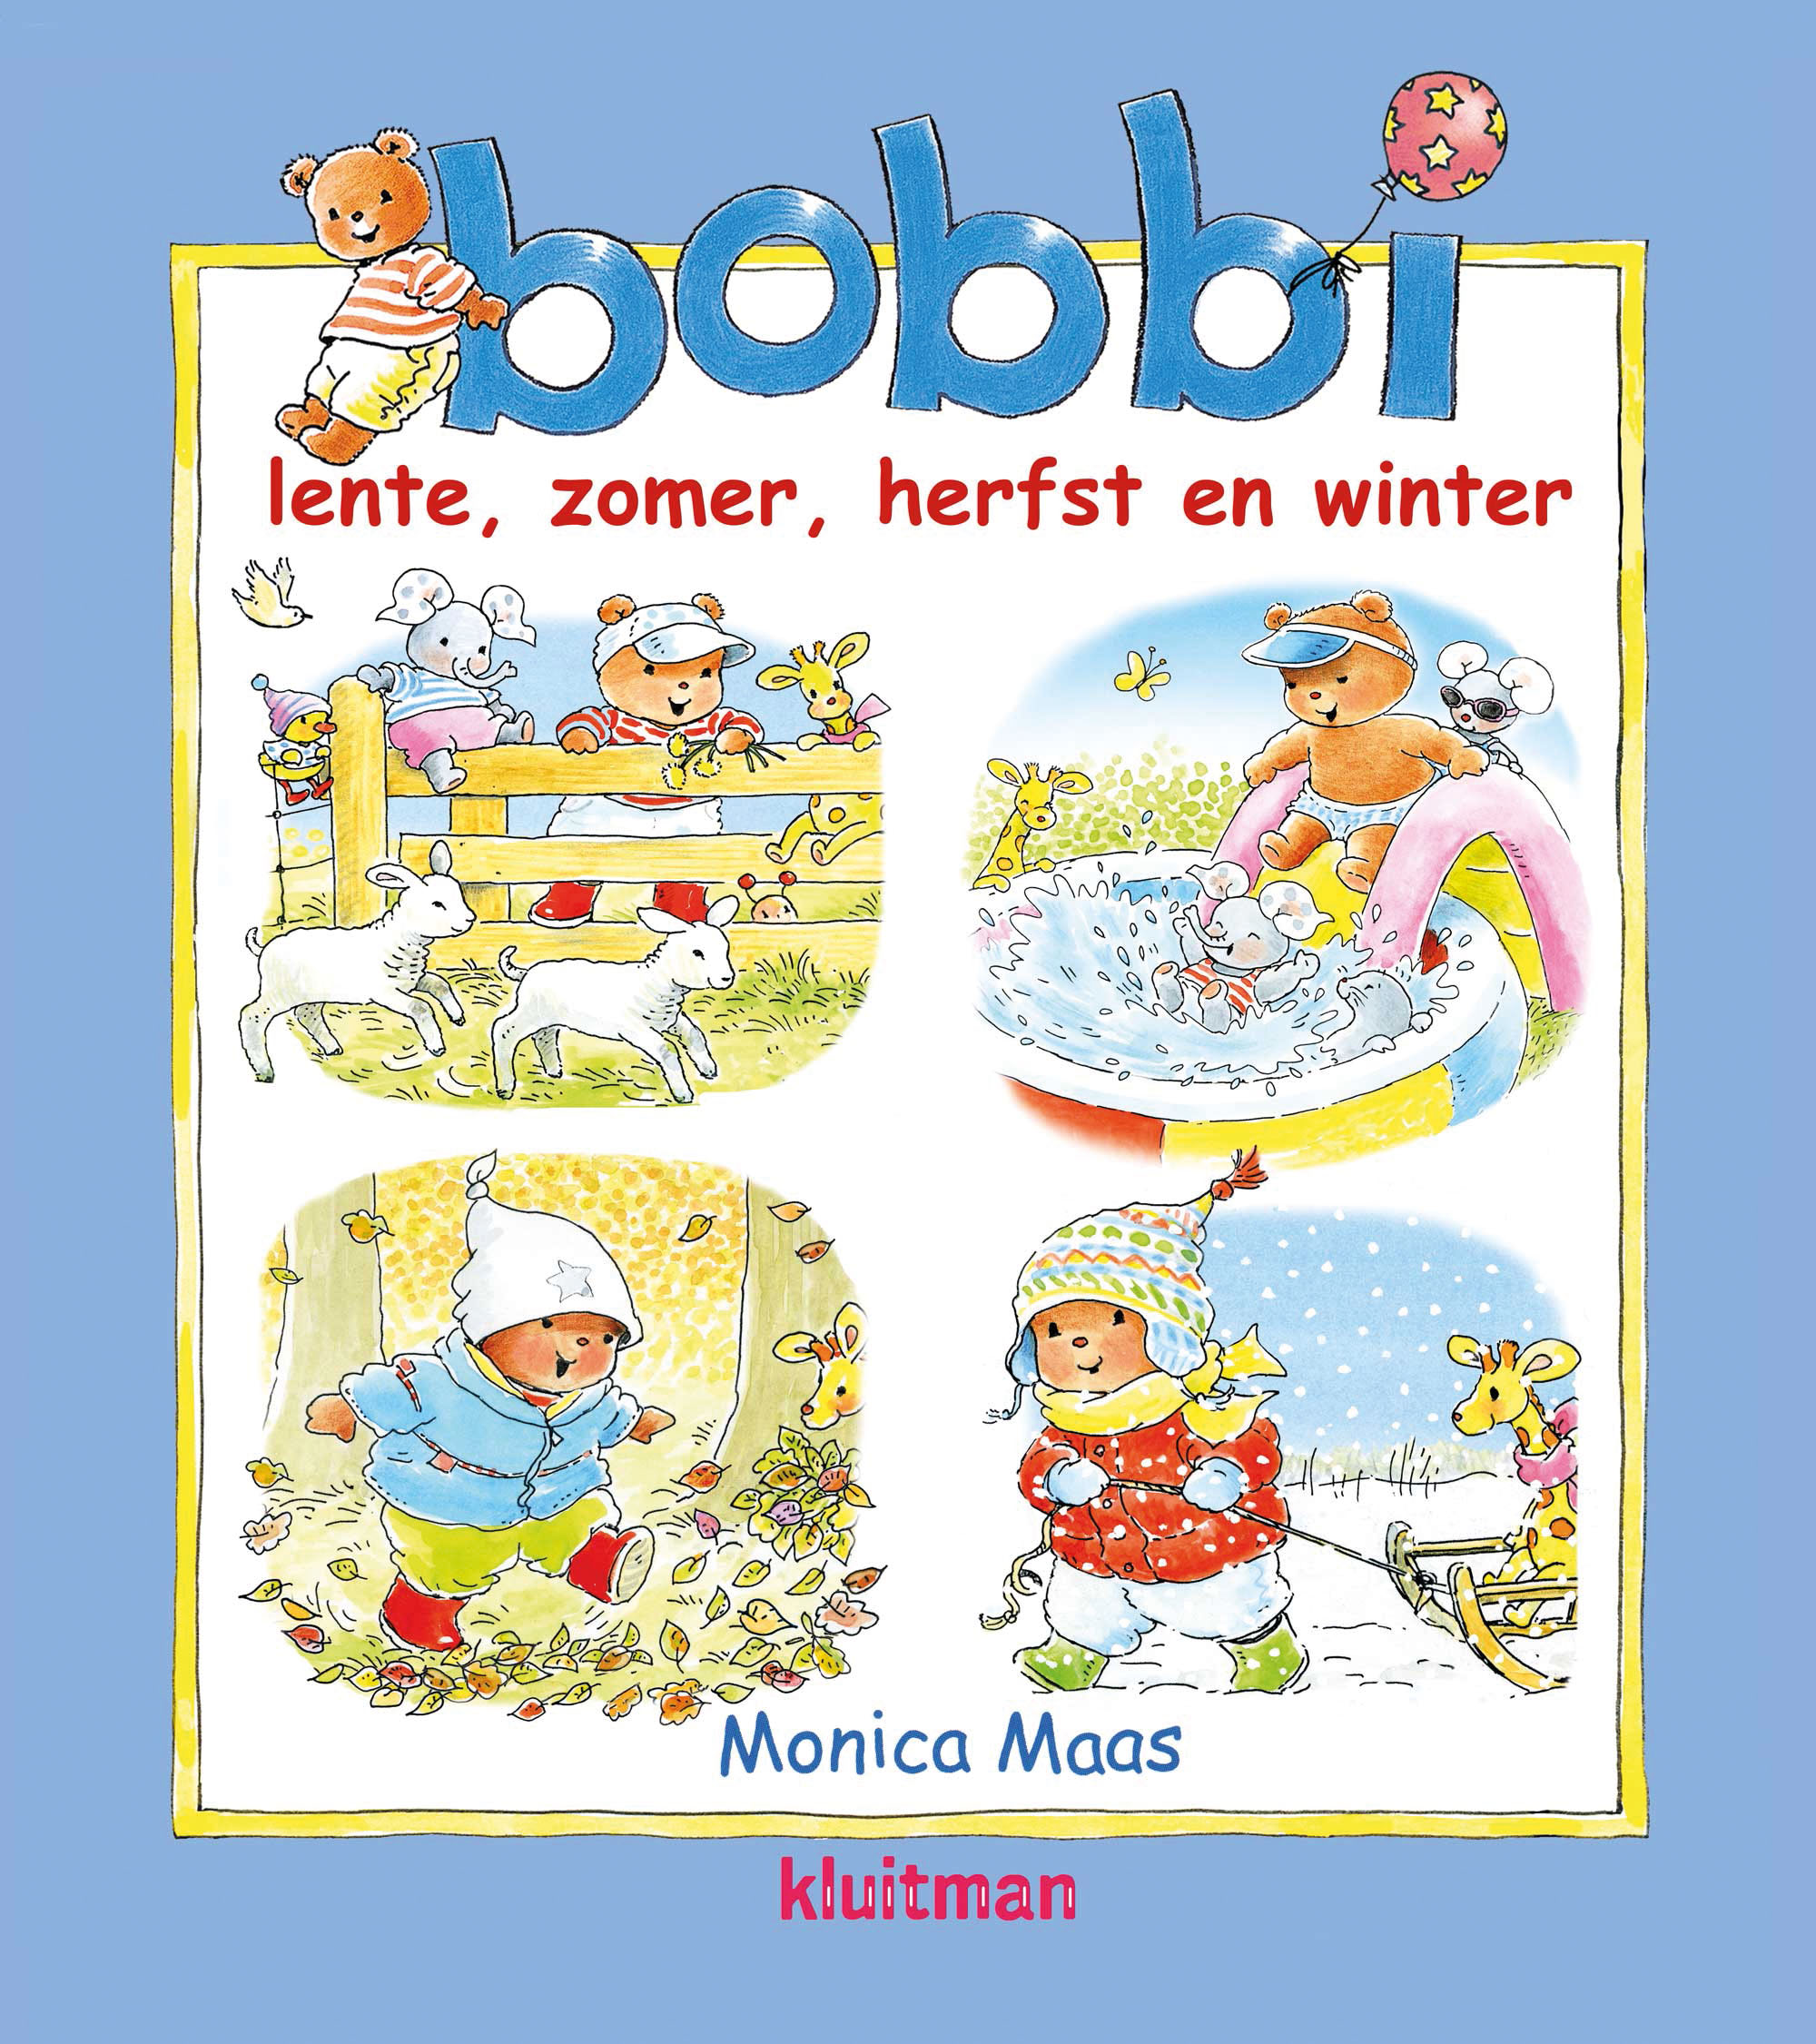 meteoor Piket morgen Bobbi. Lente, zomer, herfst en winter - Bobbi kinderboeken - Vrolijke  boeken voor peuters